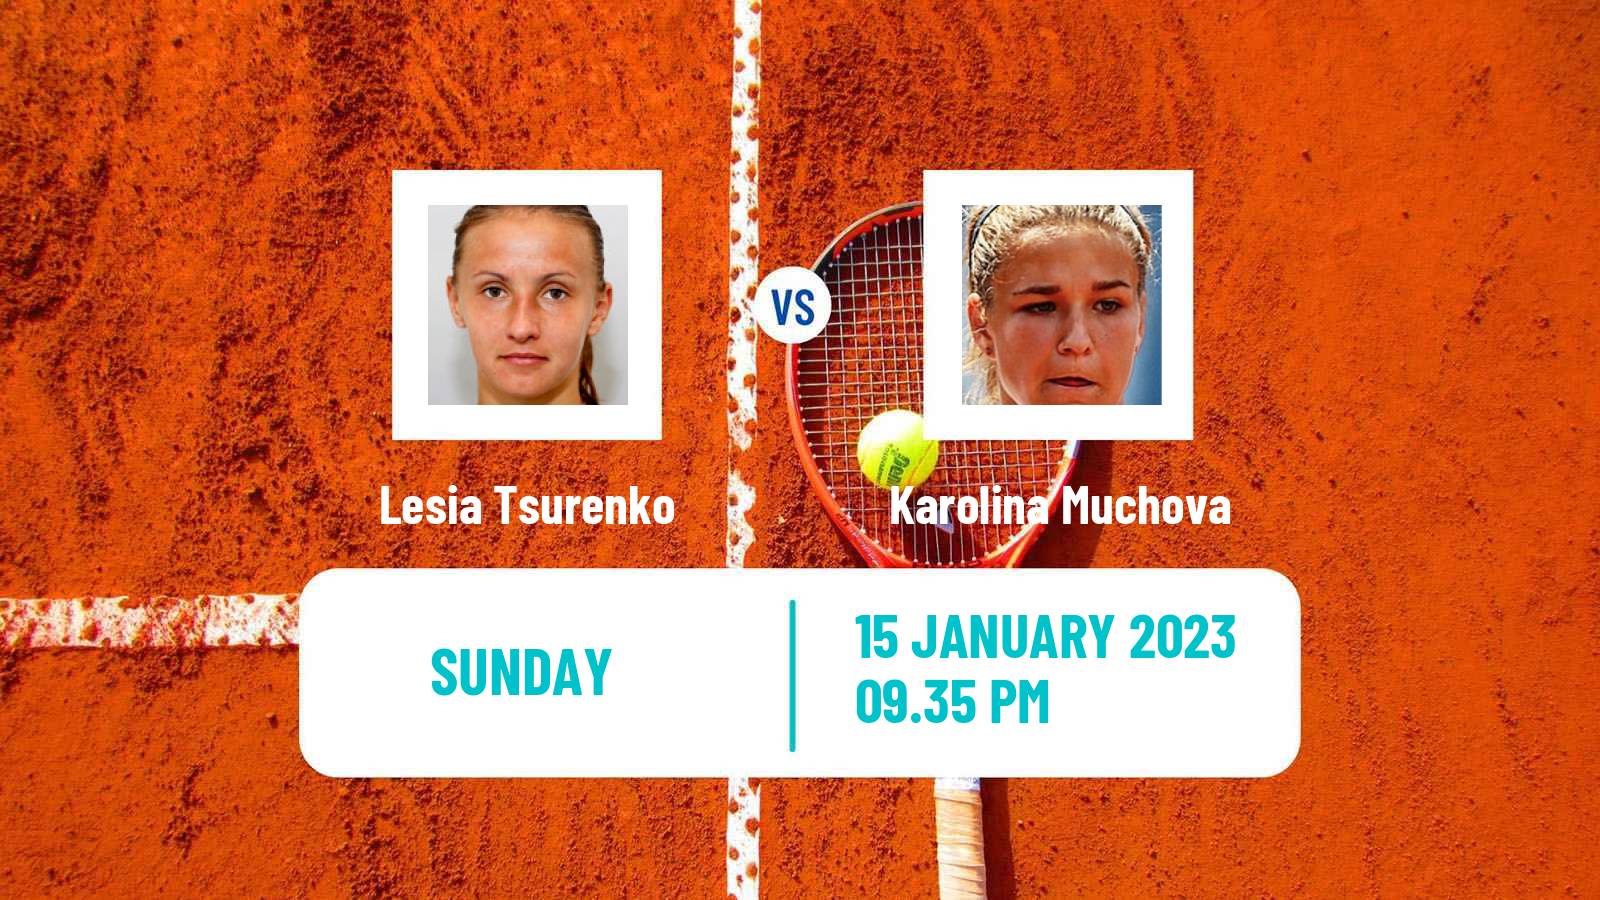 Tennis WTA Australian Open Lesia Tsurenko - Karolina Muchova